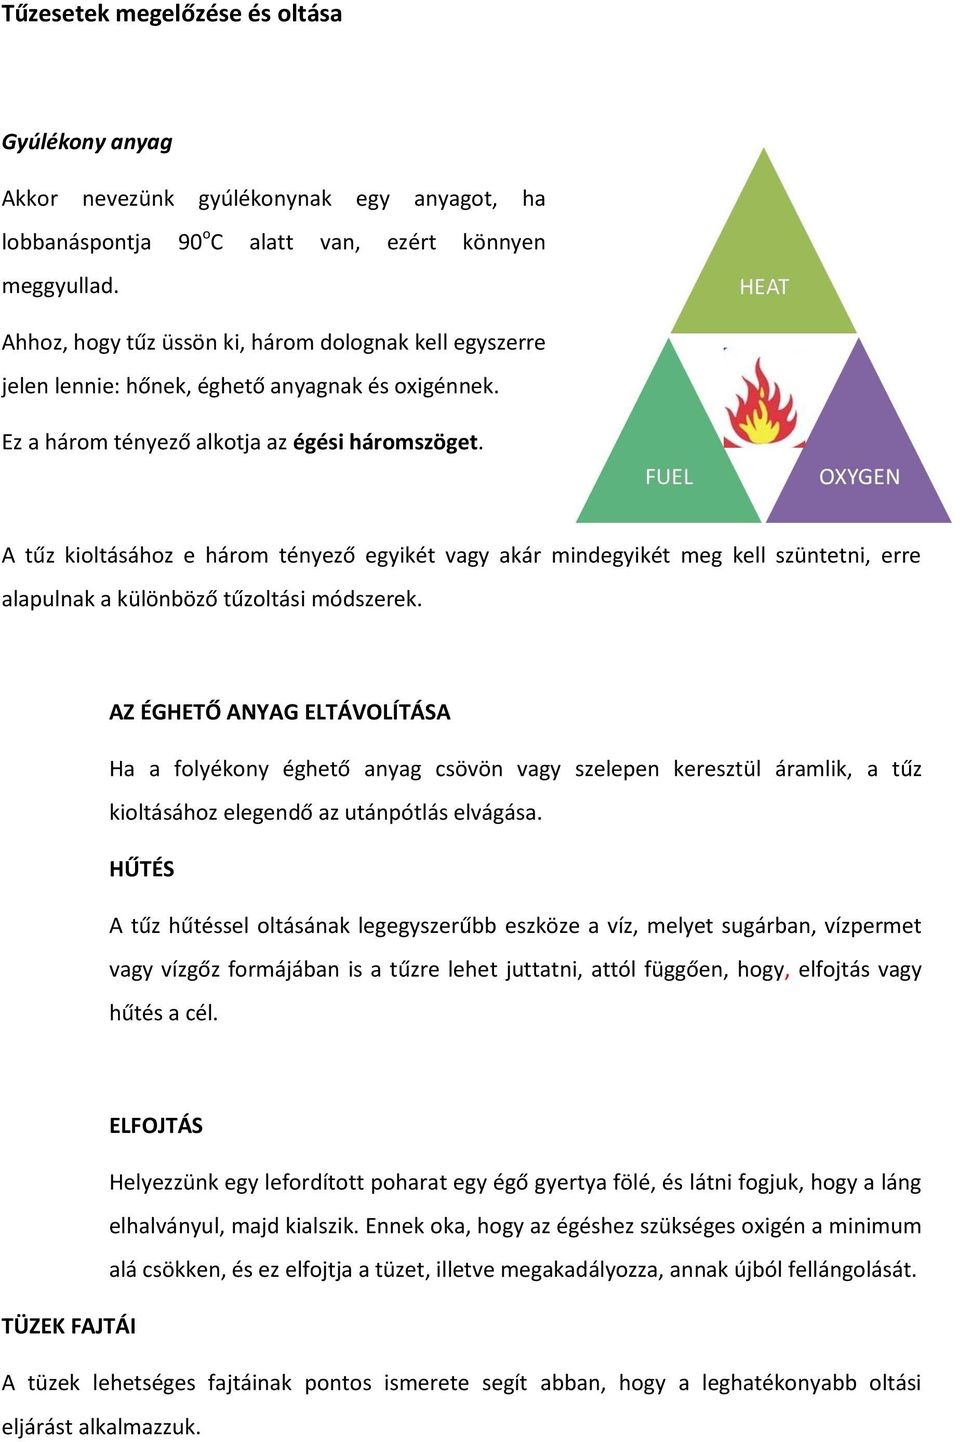 A tűz kioltásához e három tényező egyikét vagy akár mindegyikét meg kell szüntetni, erre alapulnak a különböző tűzoltási módszerek.